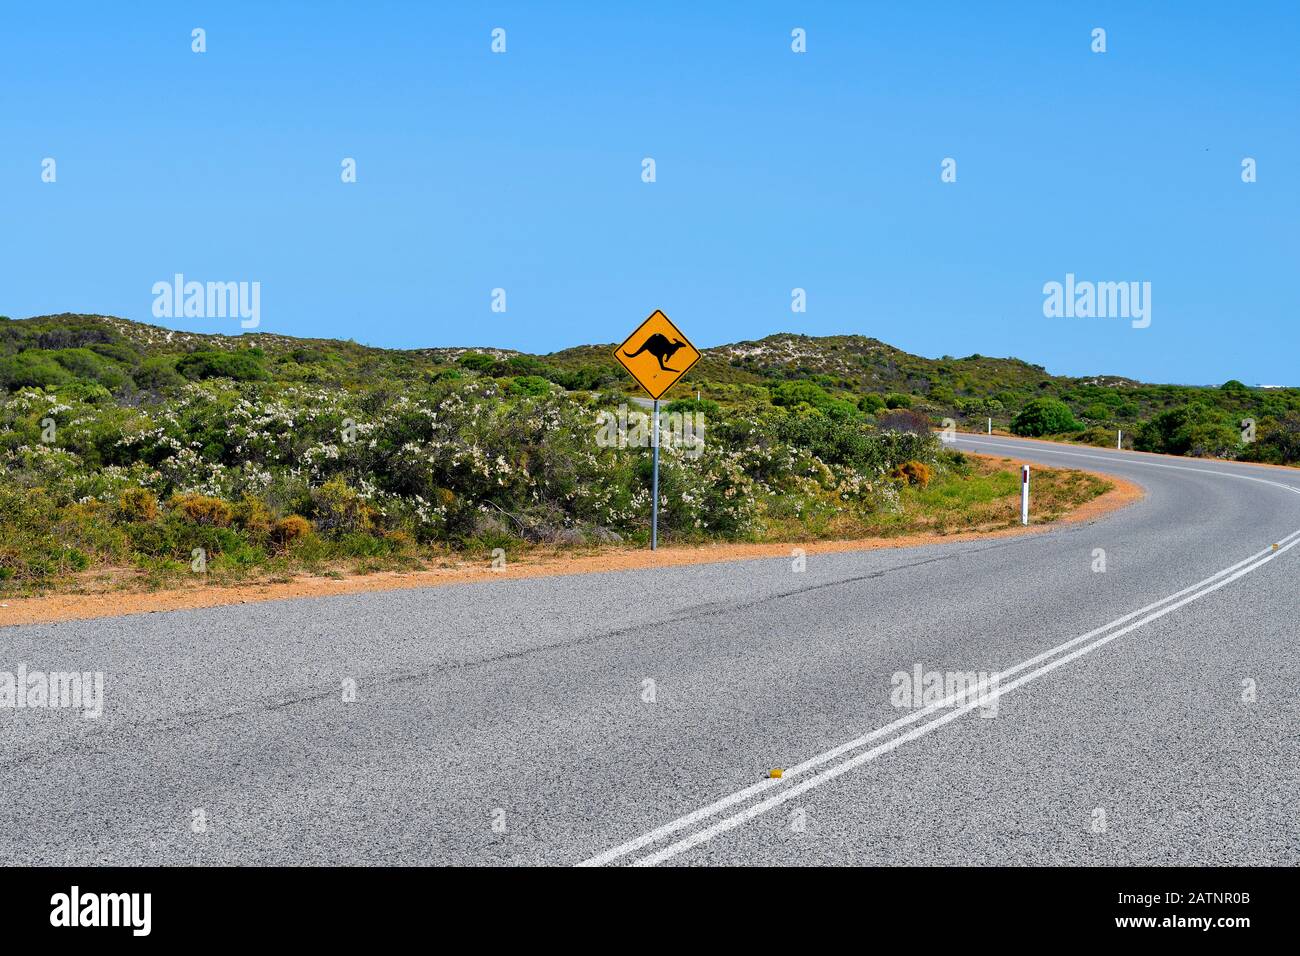 Australien, WA, versiegelte Straße zum Nambung National Park mit Warnschild für Känguruüberfahrt Stockfoto